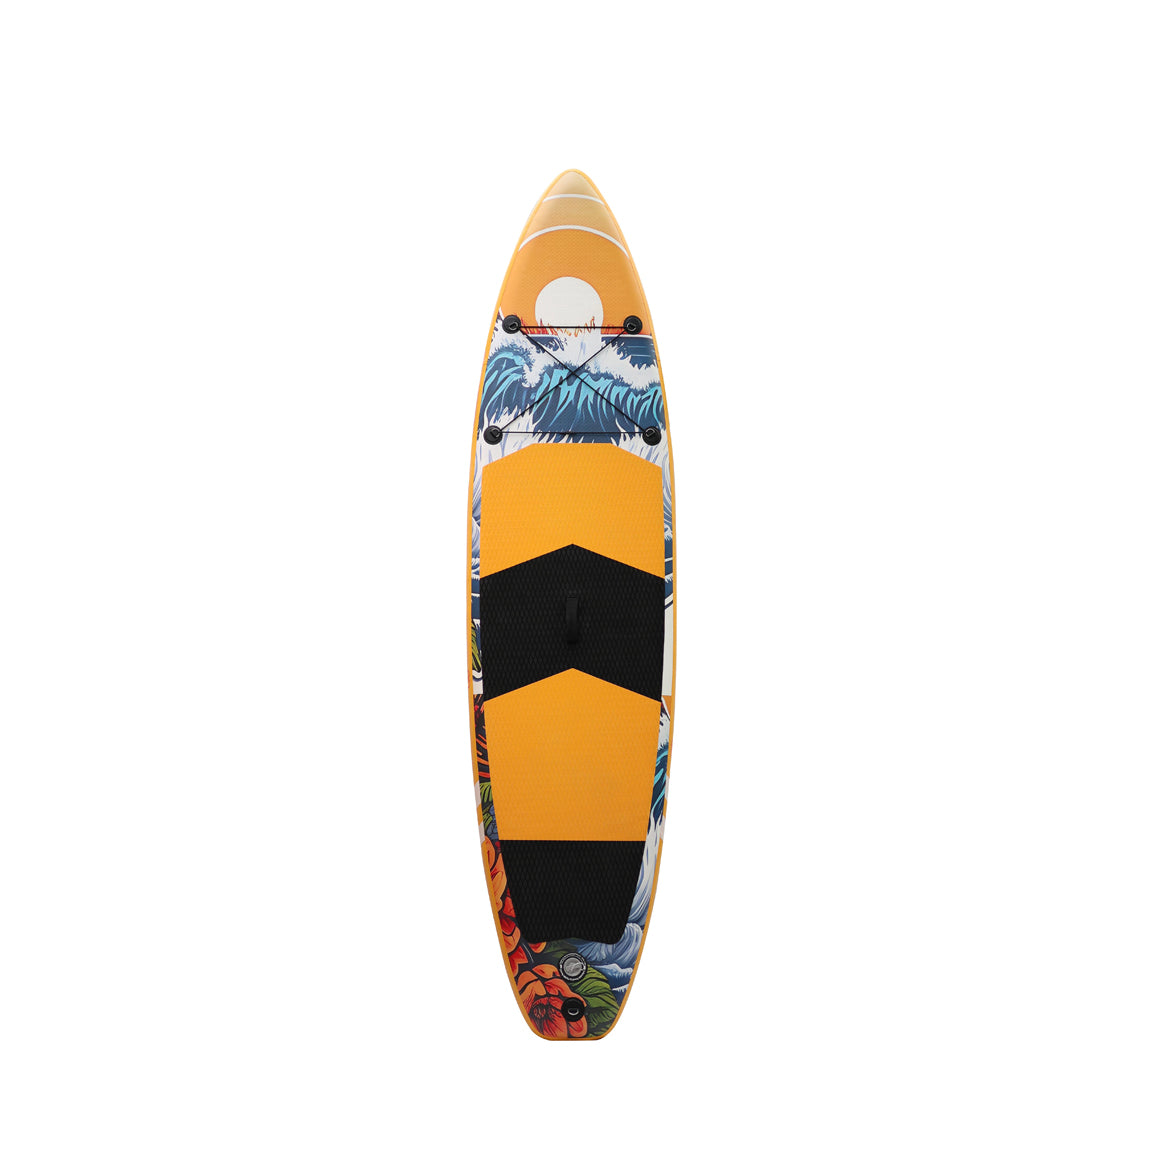 Malibu Şişirilebilir Paddle Board - SUP 305 cm